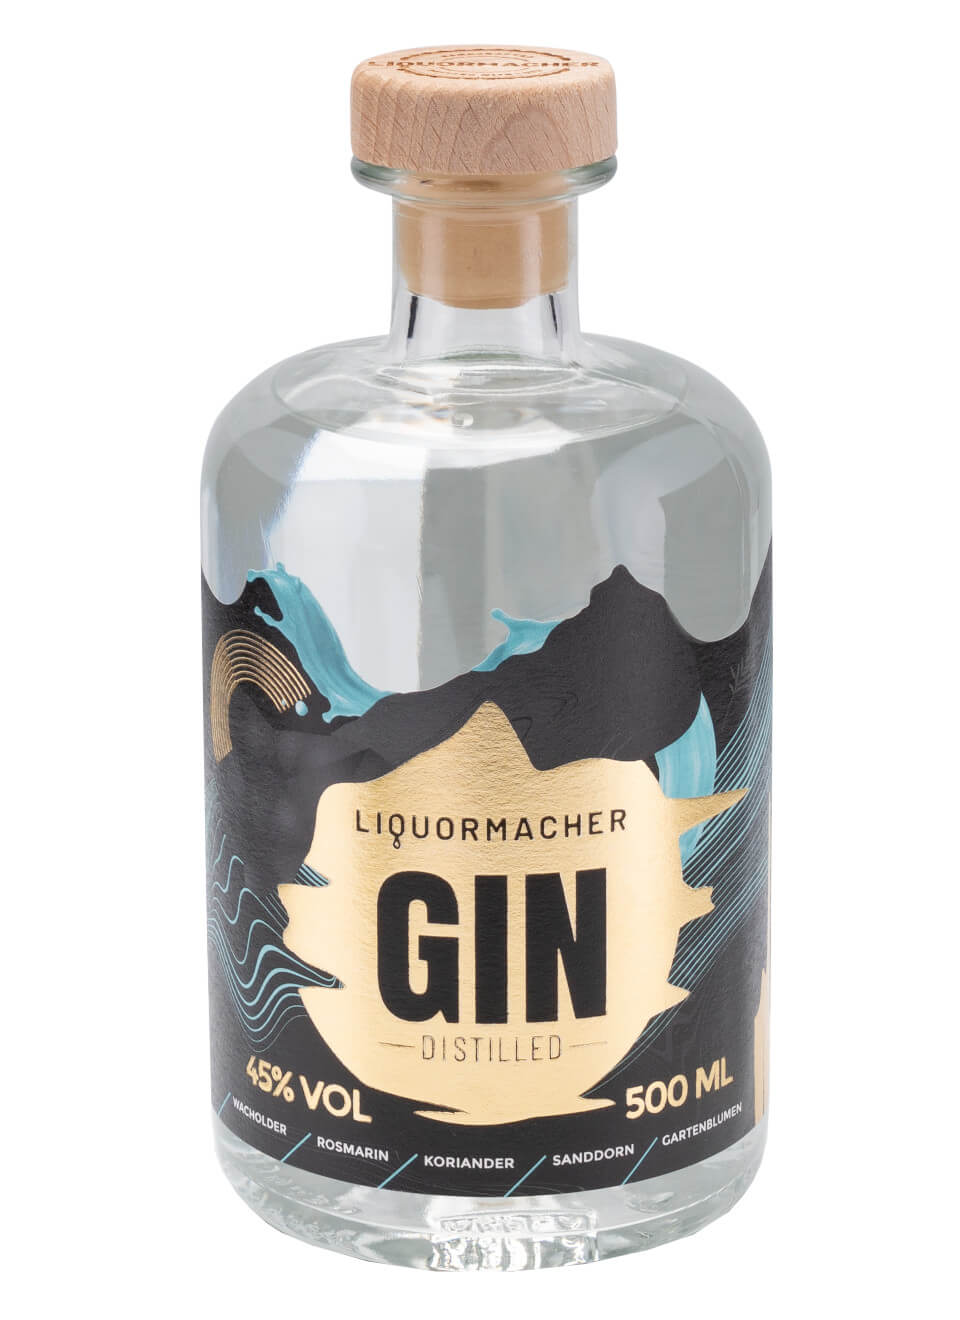 LiquorMacher Distilled Gin 0,5 L günstig kaufen | Spirituosenworld.de -  Online Shop für Spirituosen und Barzubehör